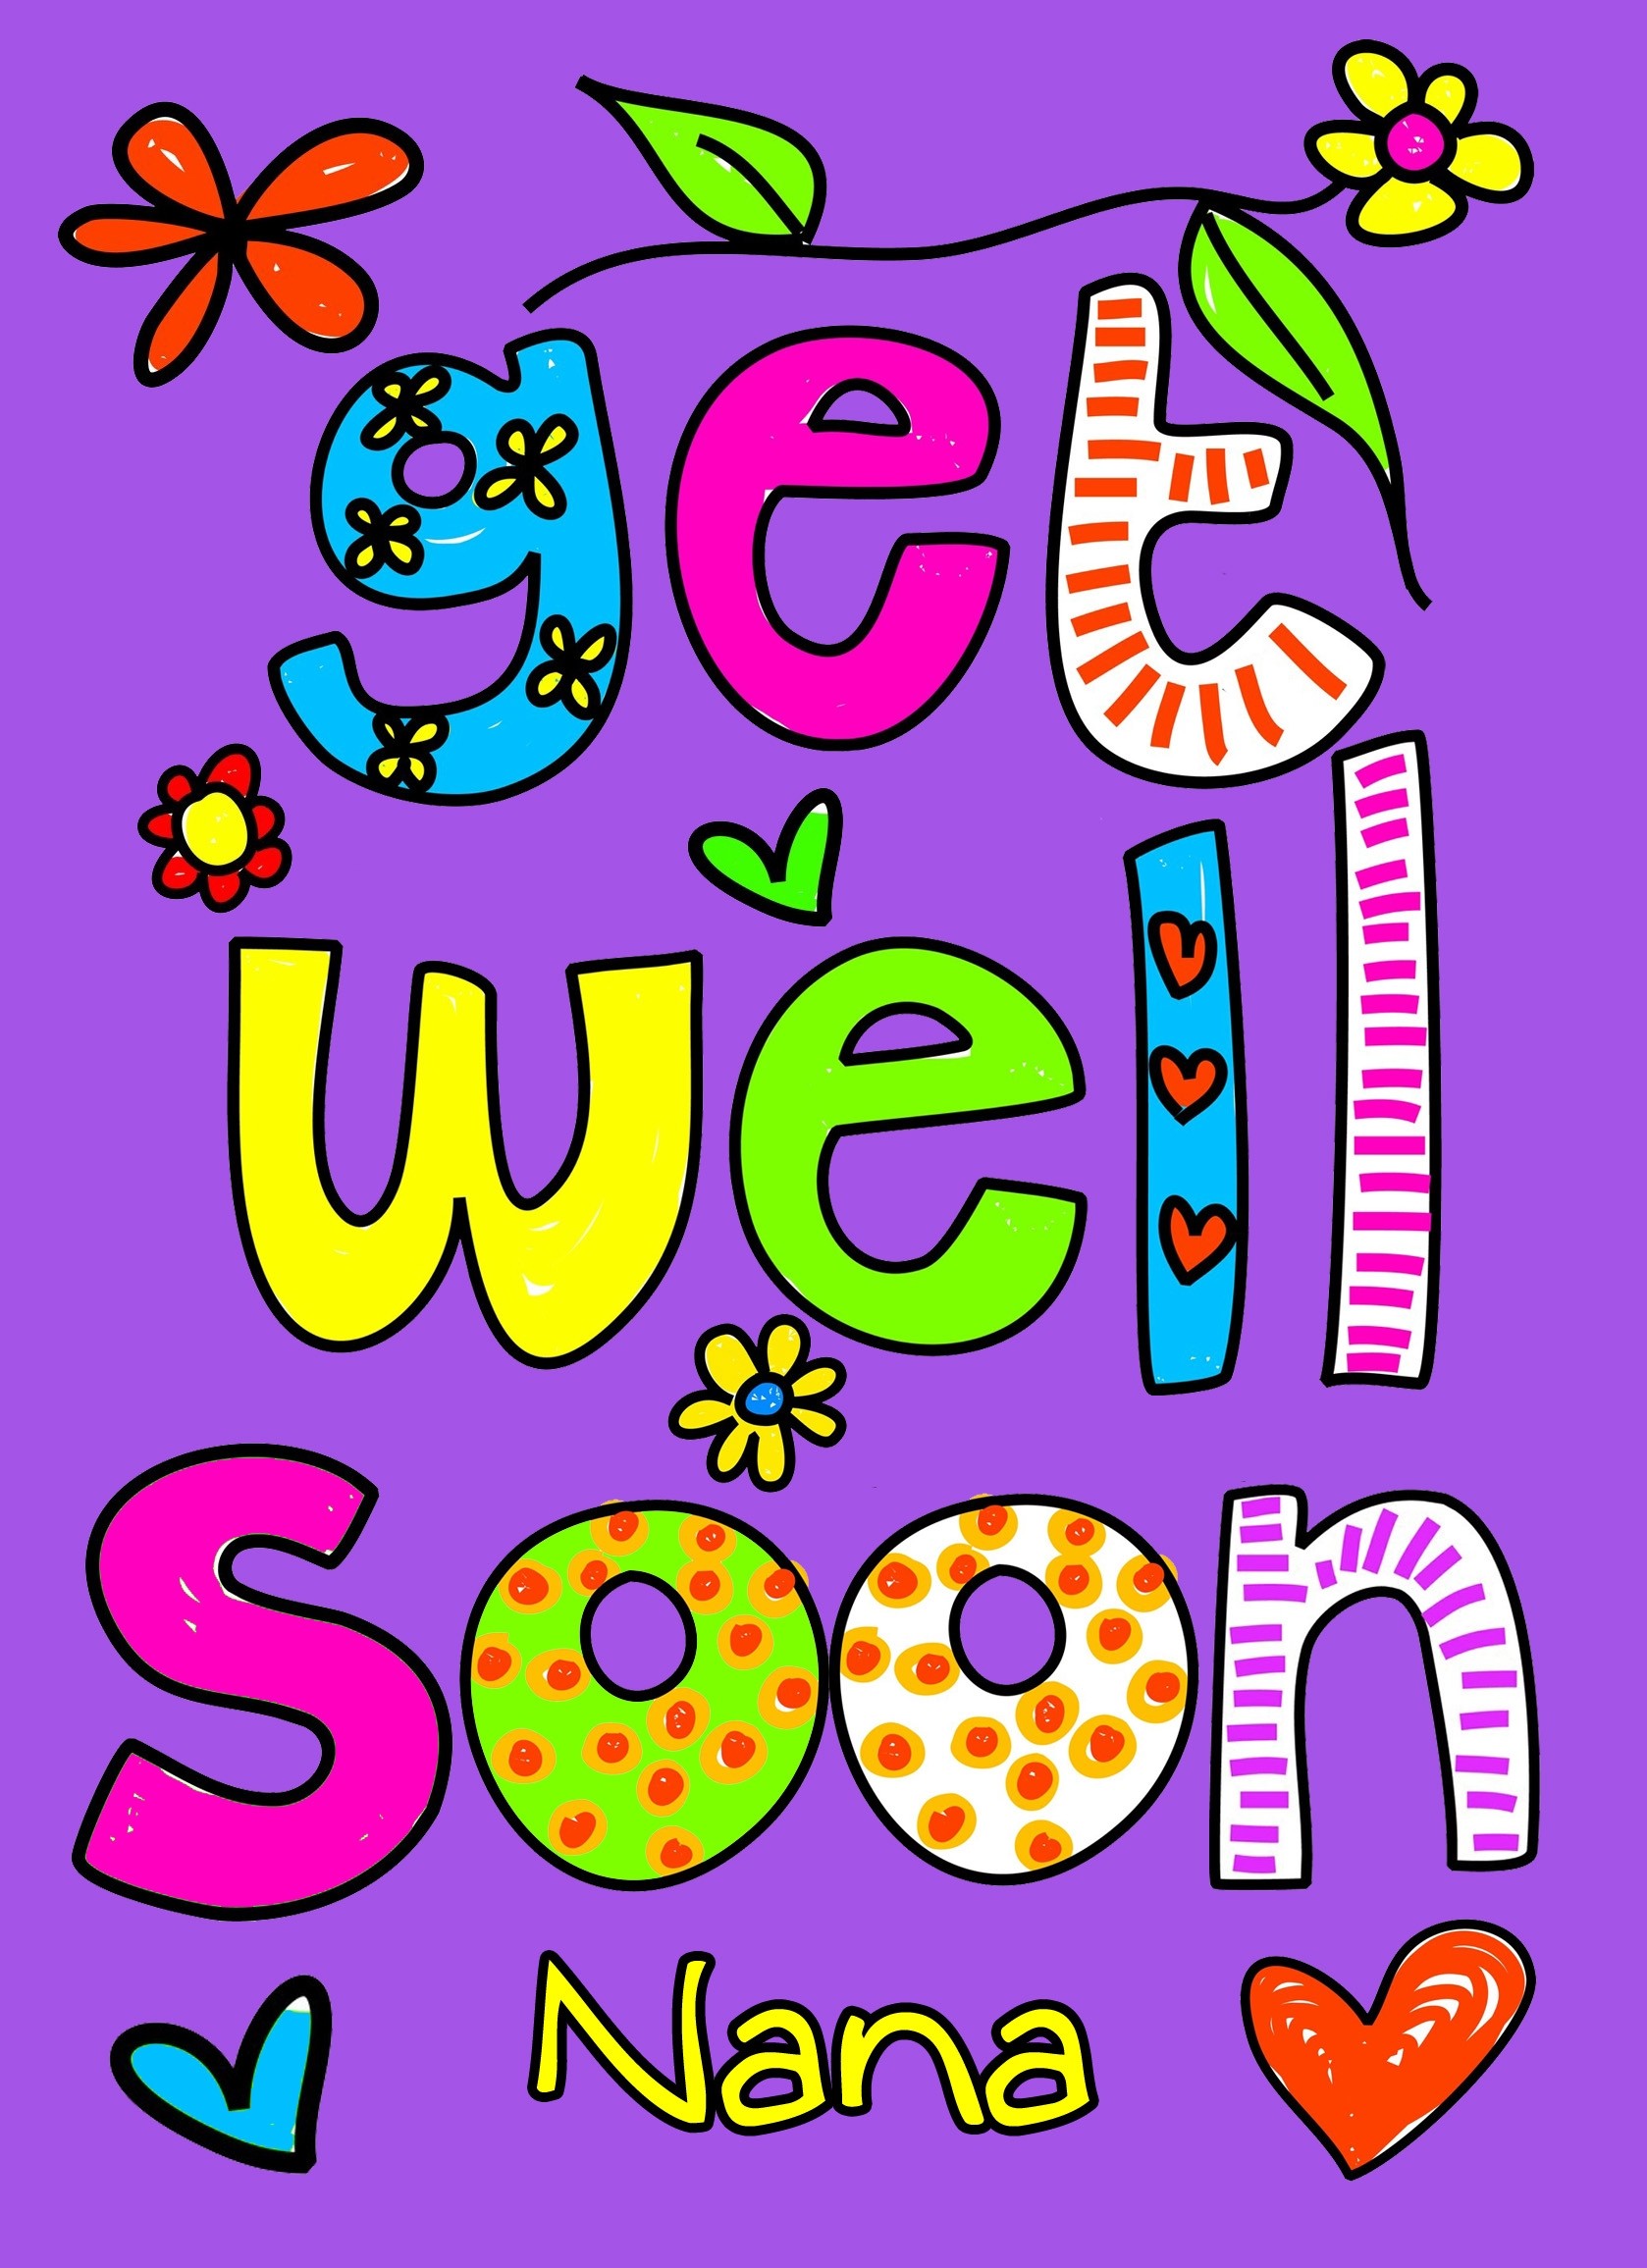 Get Well Soon 'Nana' Greeting Card